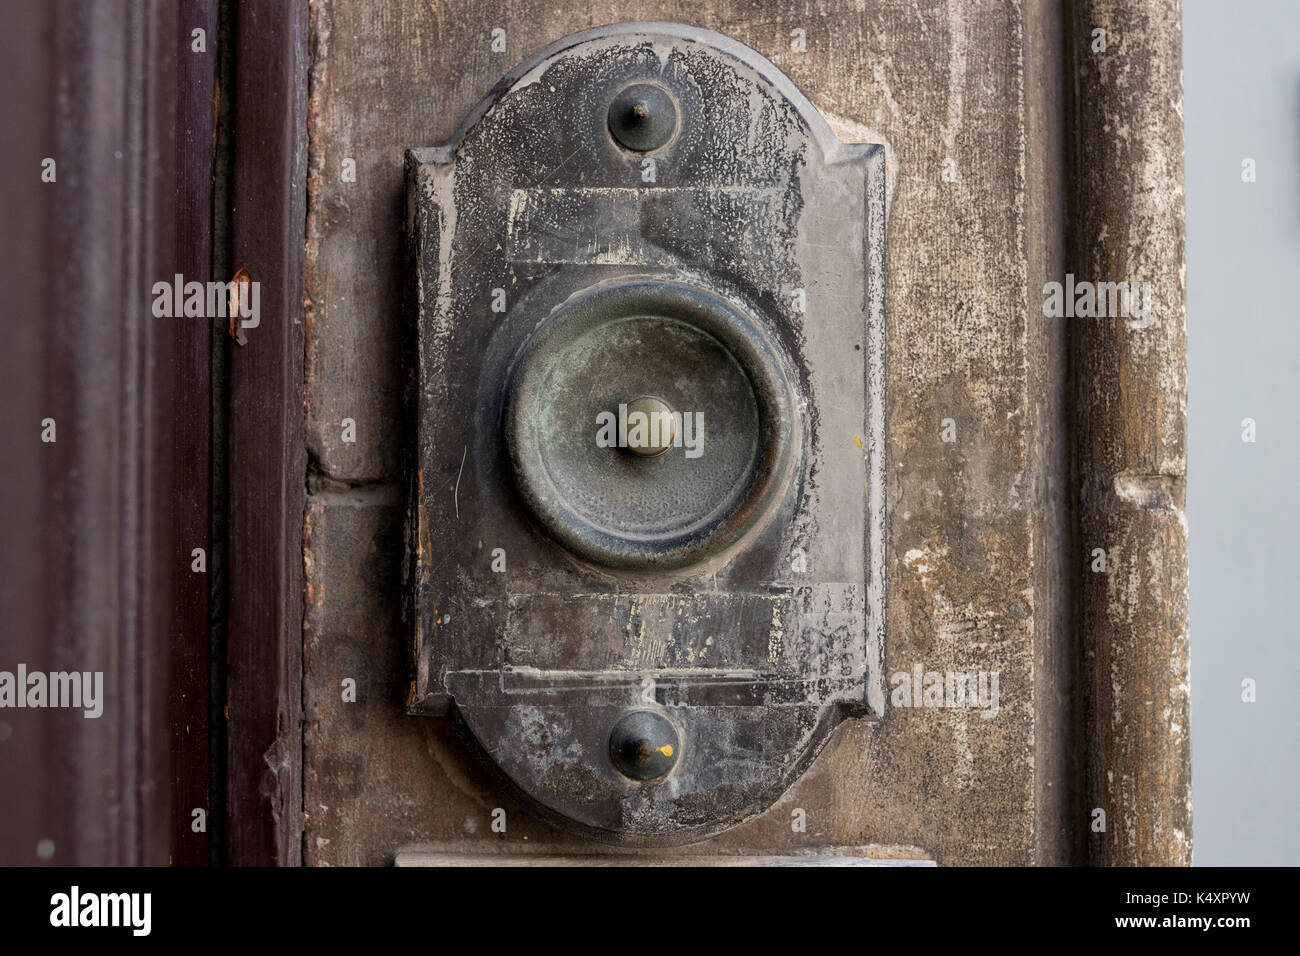 Closeup image of an old doorbell Stock Photo - Alamy